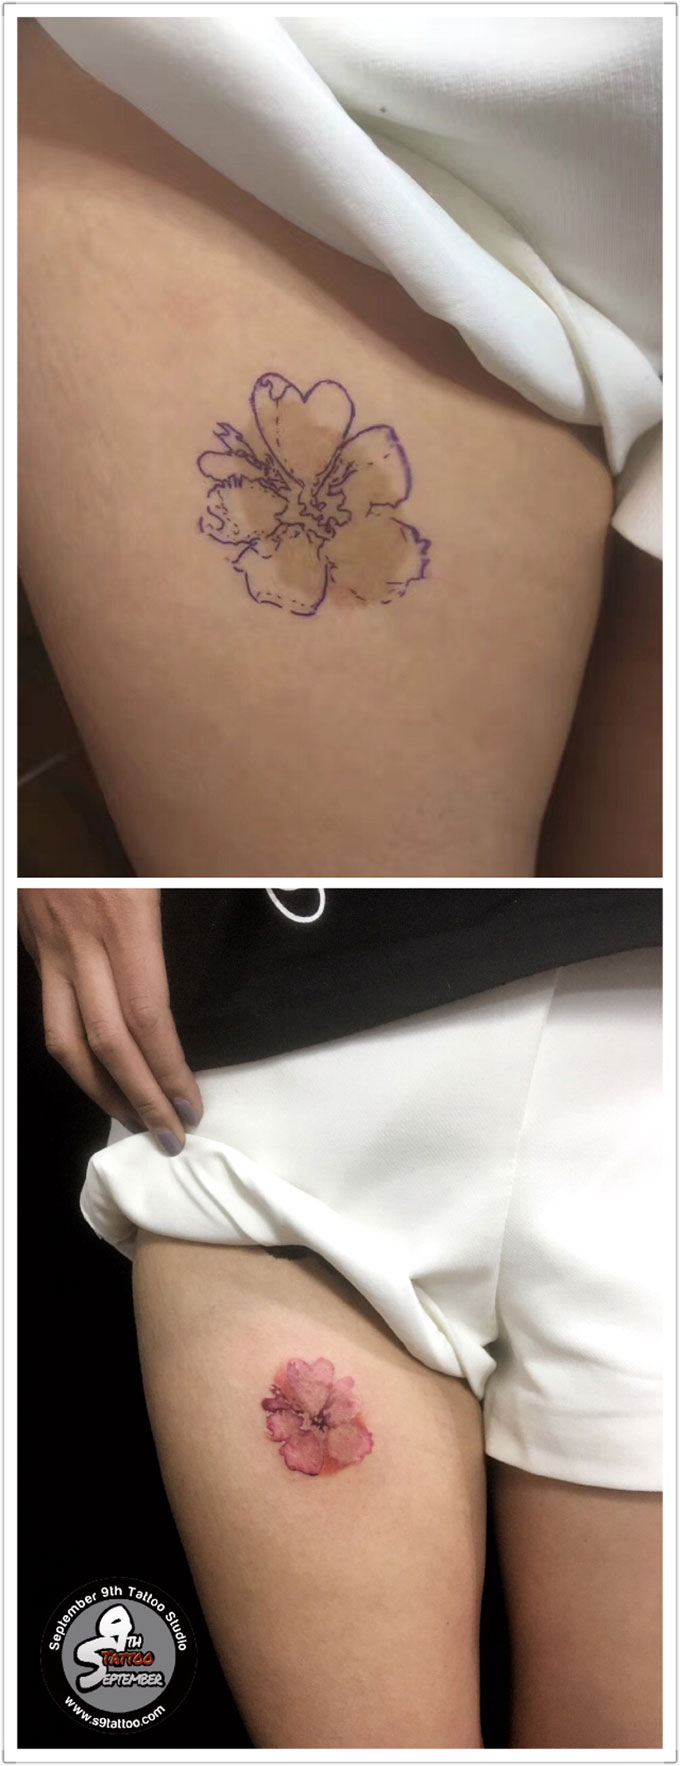 胎记遮盖水彩花纹身 遮盖与修改 September 9th Tattoo